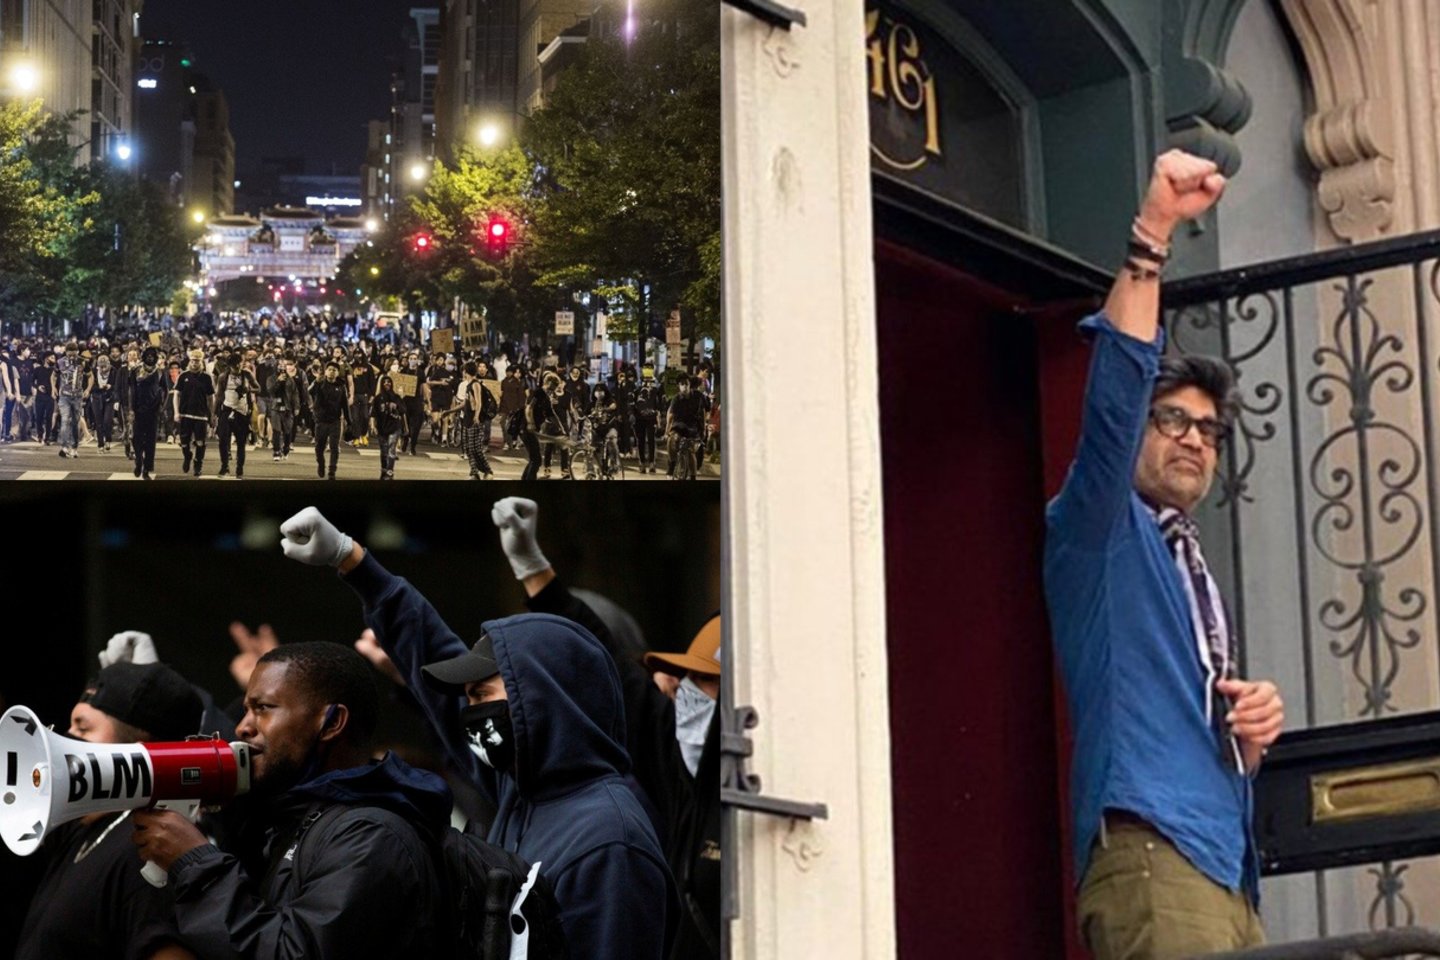 Rahulas Dubey'us parodė neįtikėtiną palankumą Vašingtone protestuojantiems asmenims: į savo namus nakčiai įleido virš 70 protestavusių asmenų.<br>lrytas.lt koliažas